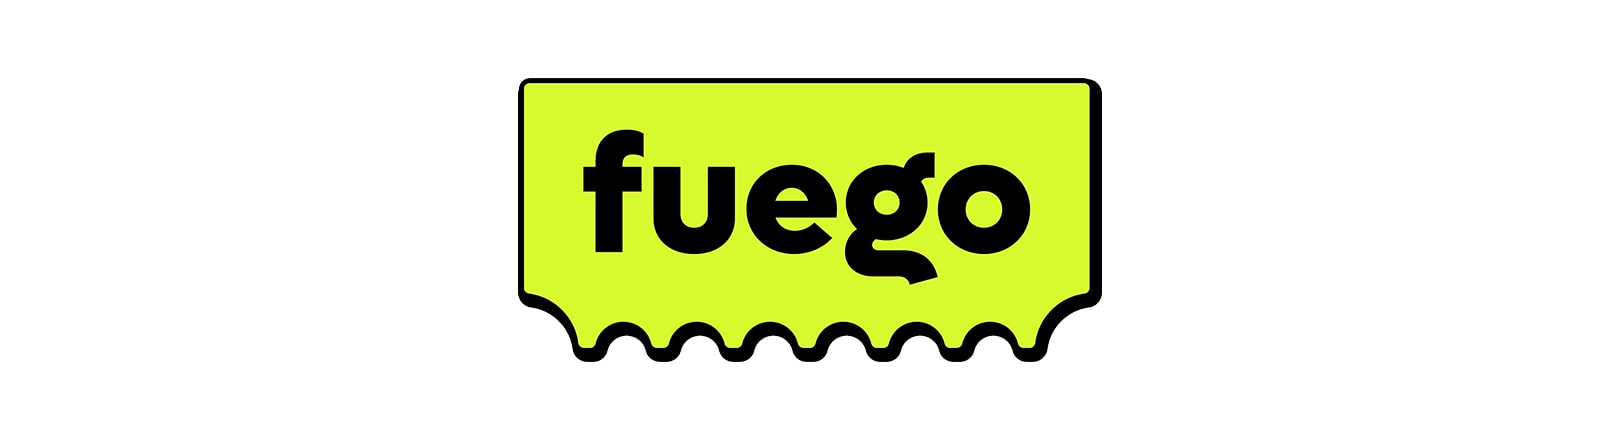 bannière avec le logo de l'application Fuego